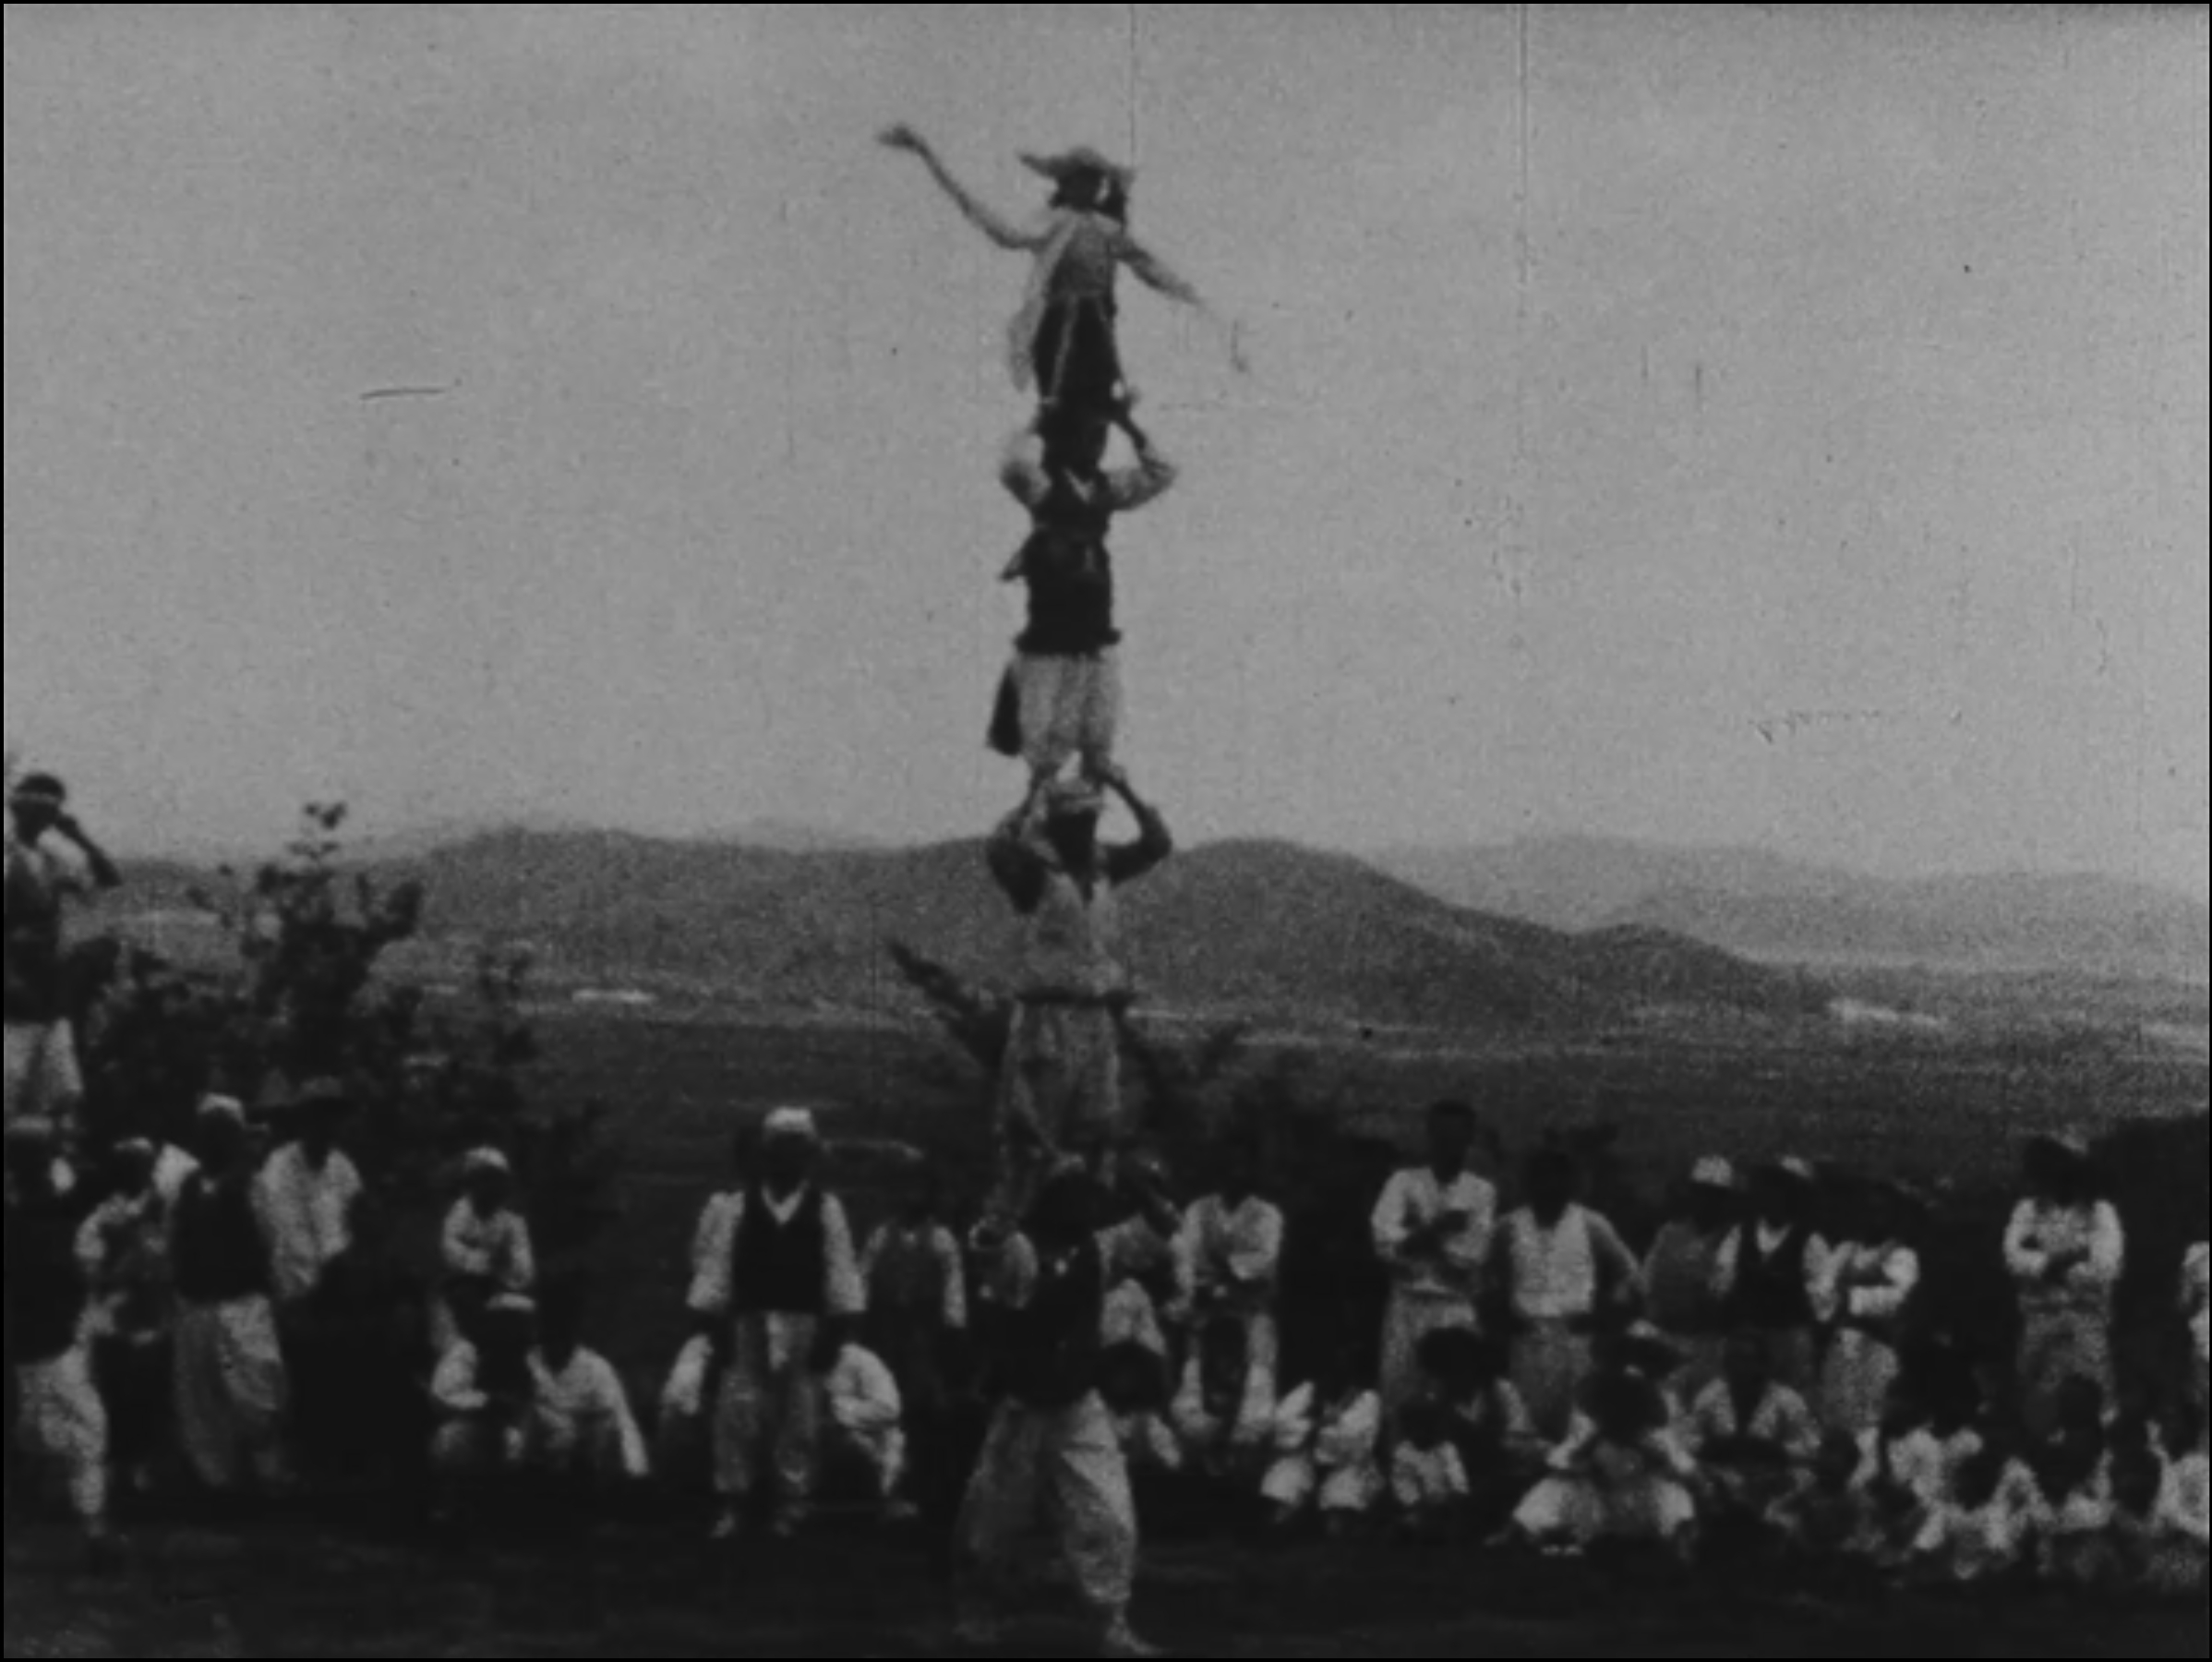 1935년 촬영한 것으로 추정되는 남사당패 풍물놀이 등 20세기 초중반 한국의 모습을 담은 생생한 영상이 공개됐다. 한국영상자료원 제공